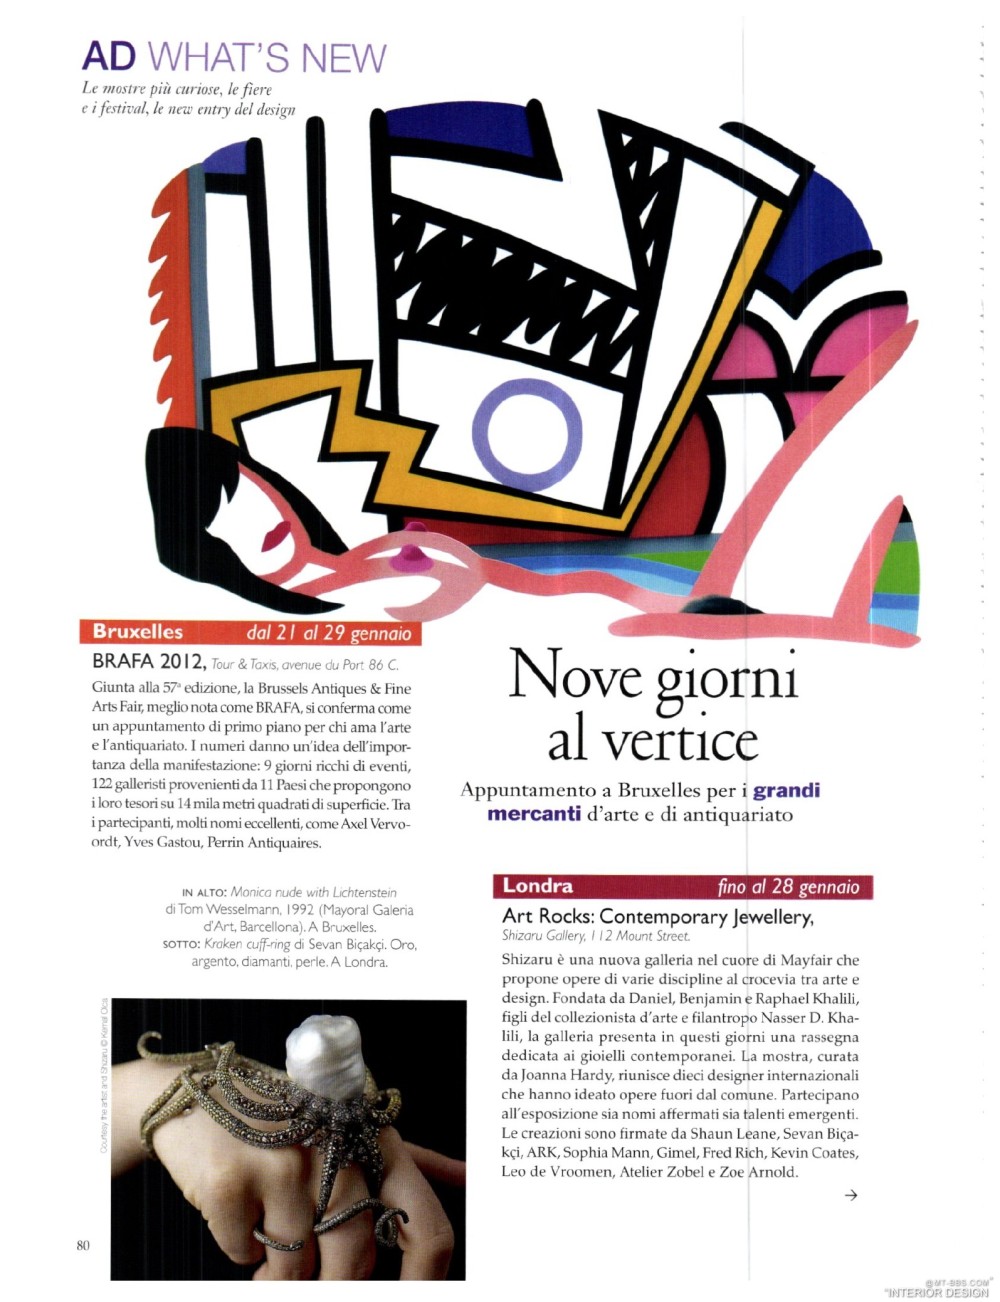 意大利AD 杂志 2012年全年JPG高清版本 全免（上传完毕）_0082.jpg